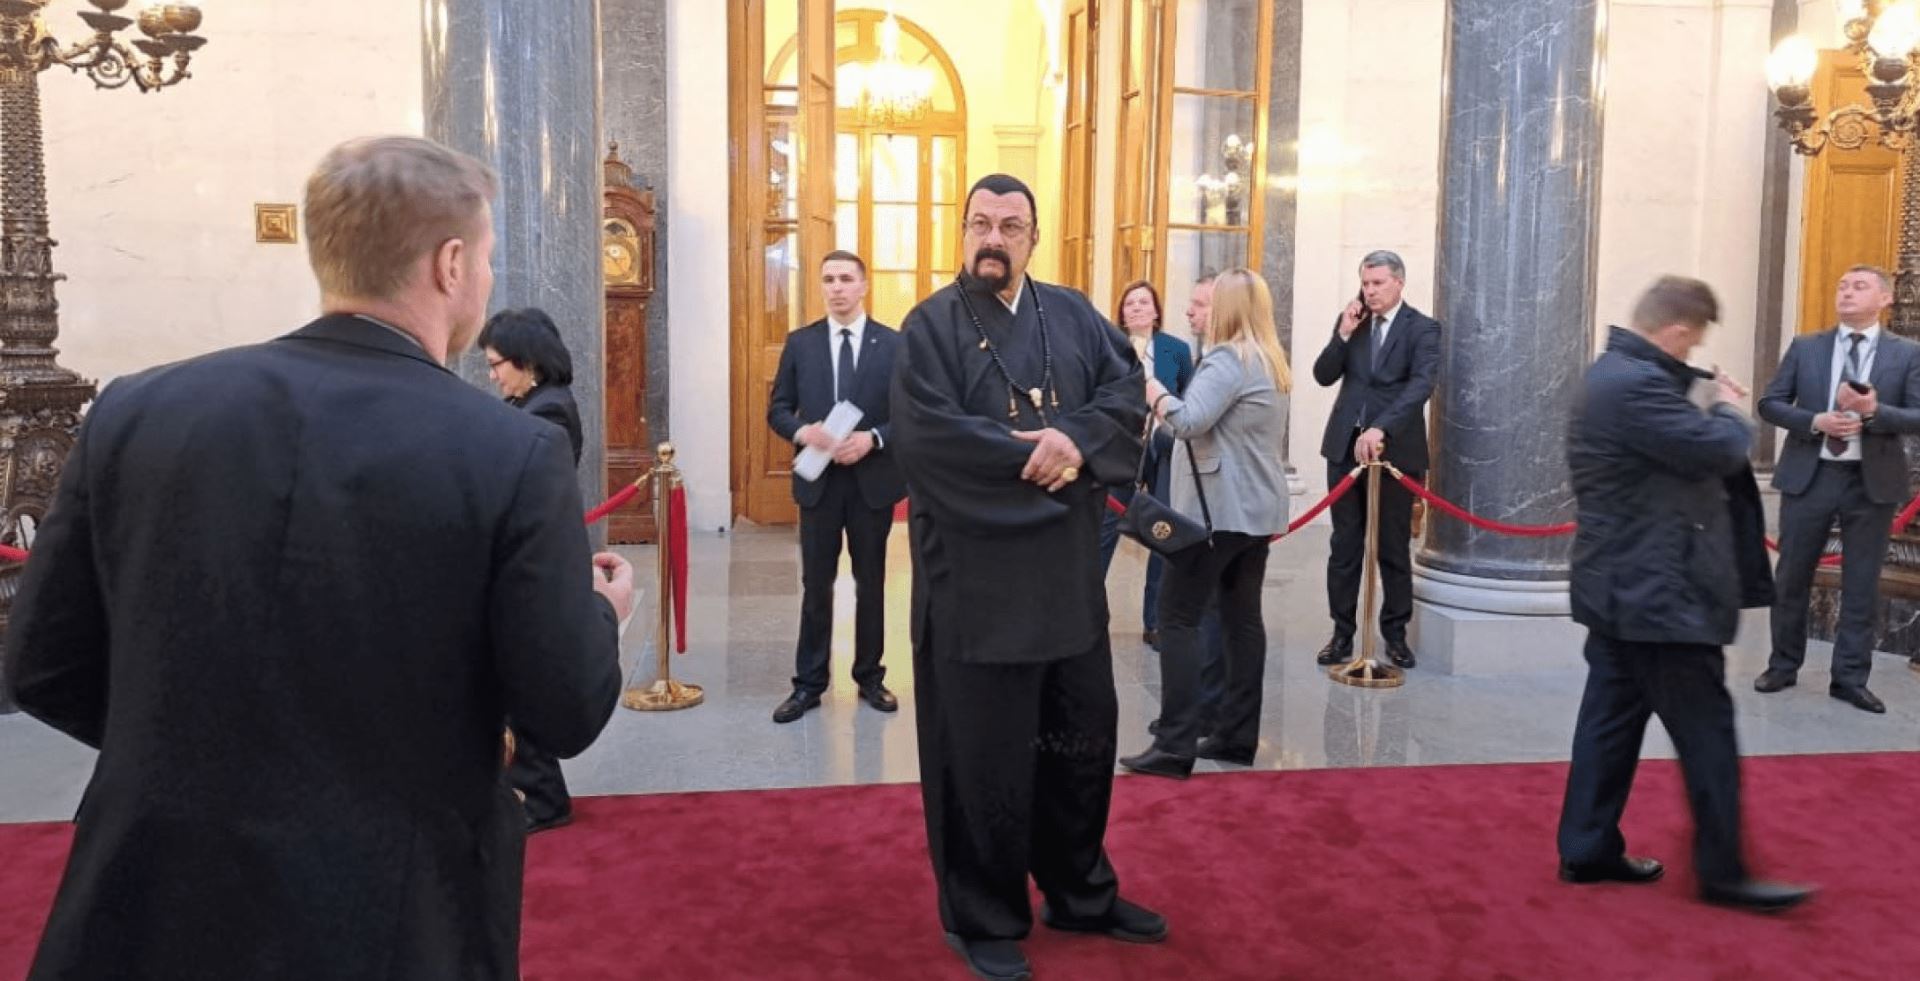 Стивен Сигал в странном наряде стал гостем инаугурации Путина: фото — фото 1